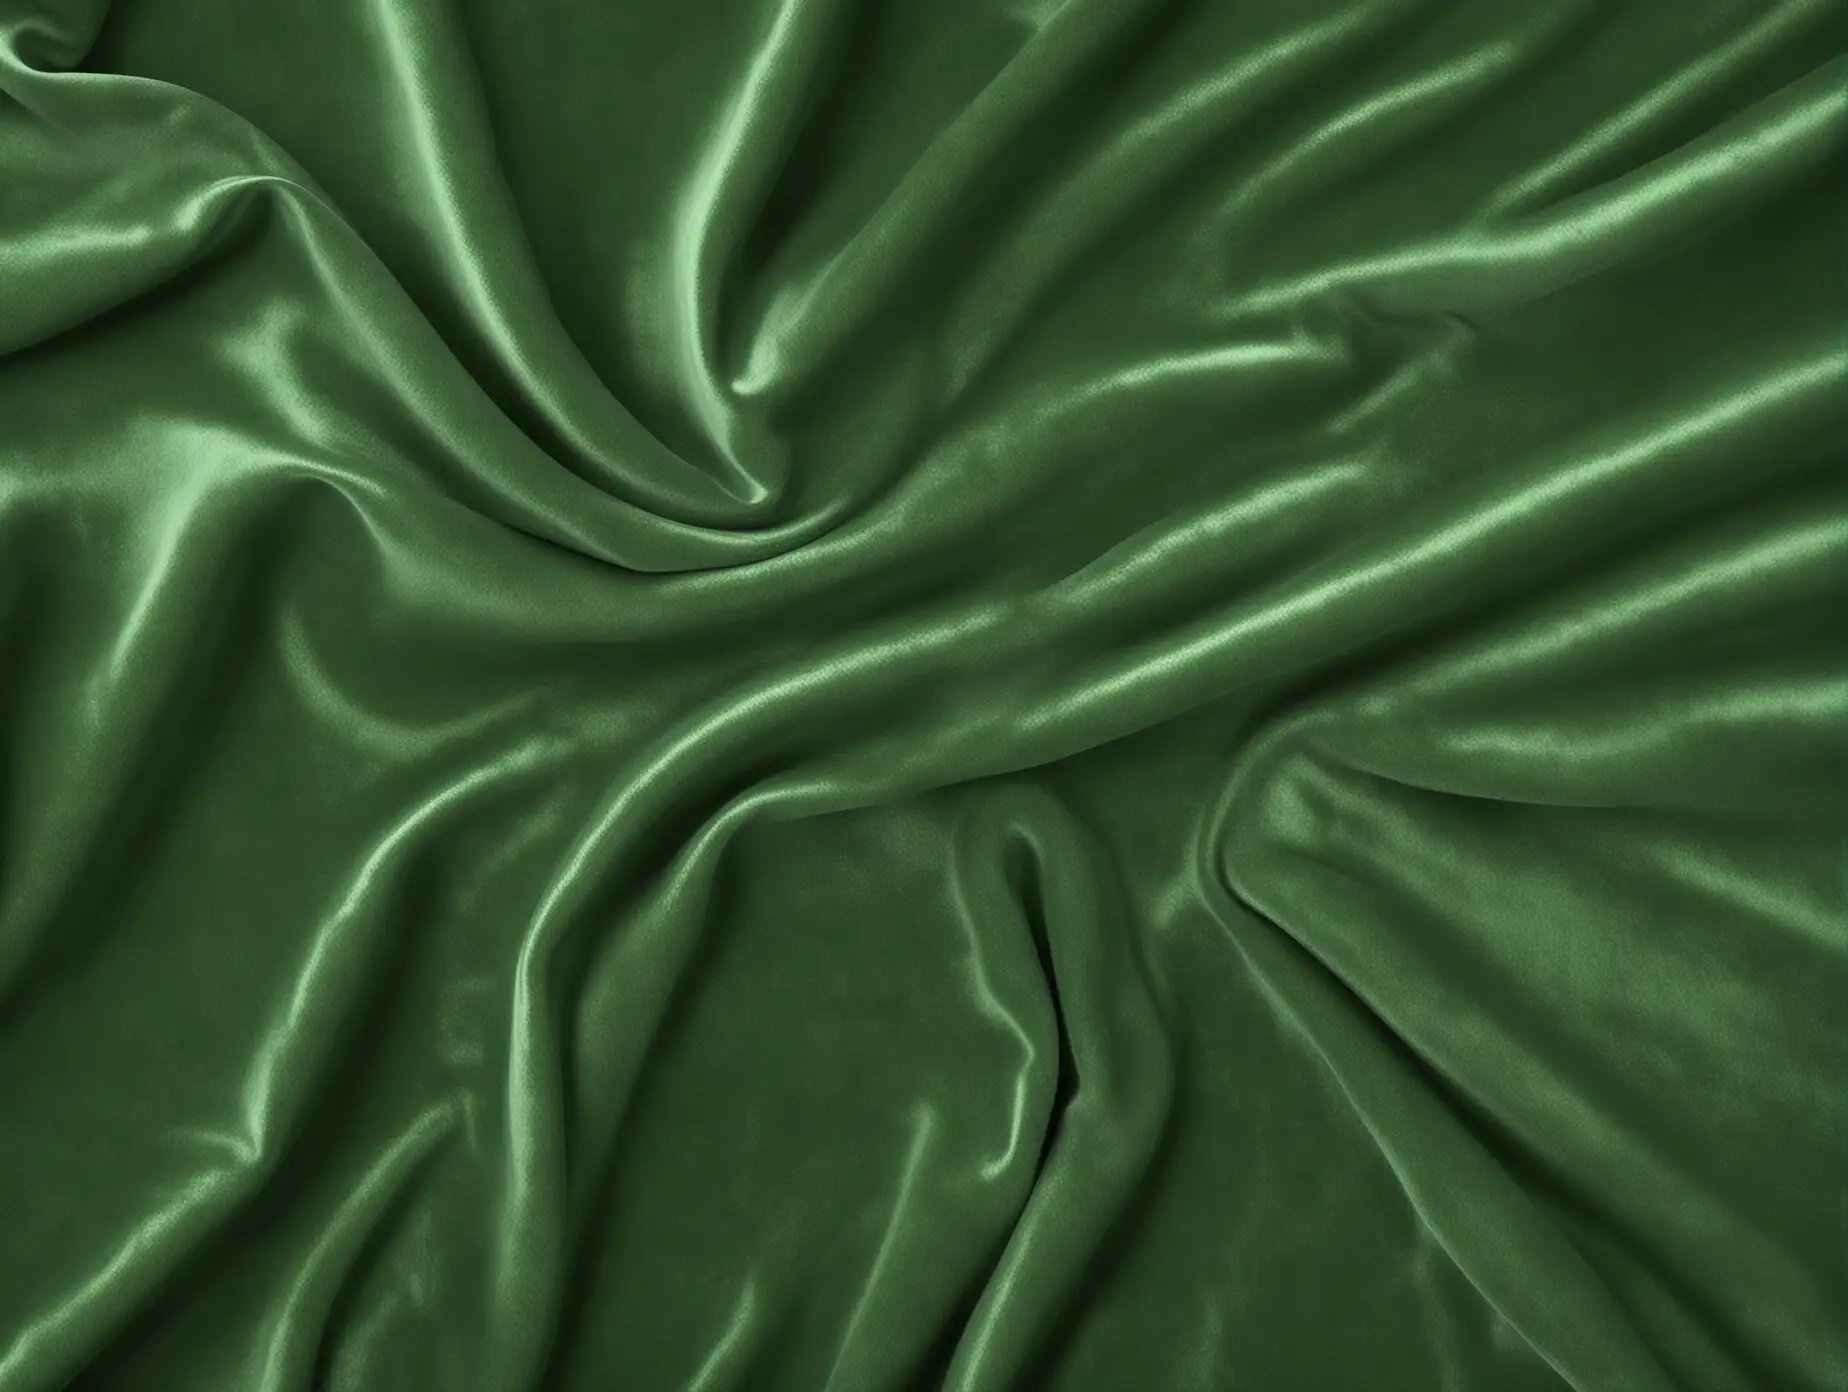 Hyperrealistic Green Velvet Texture Background